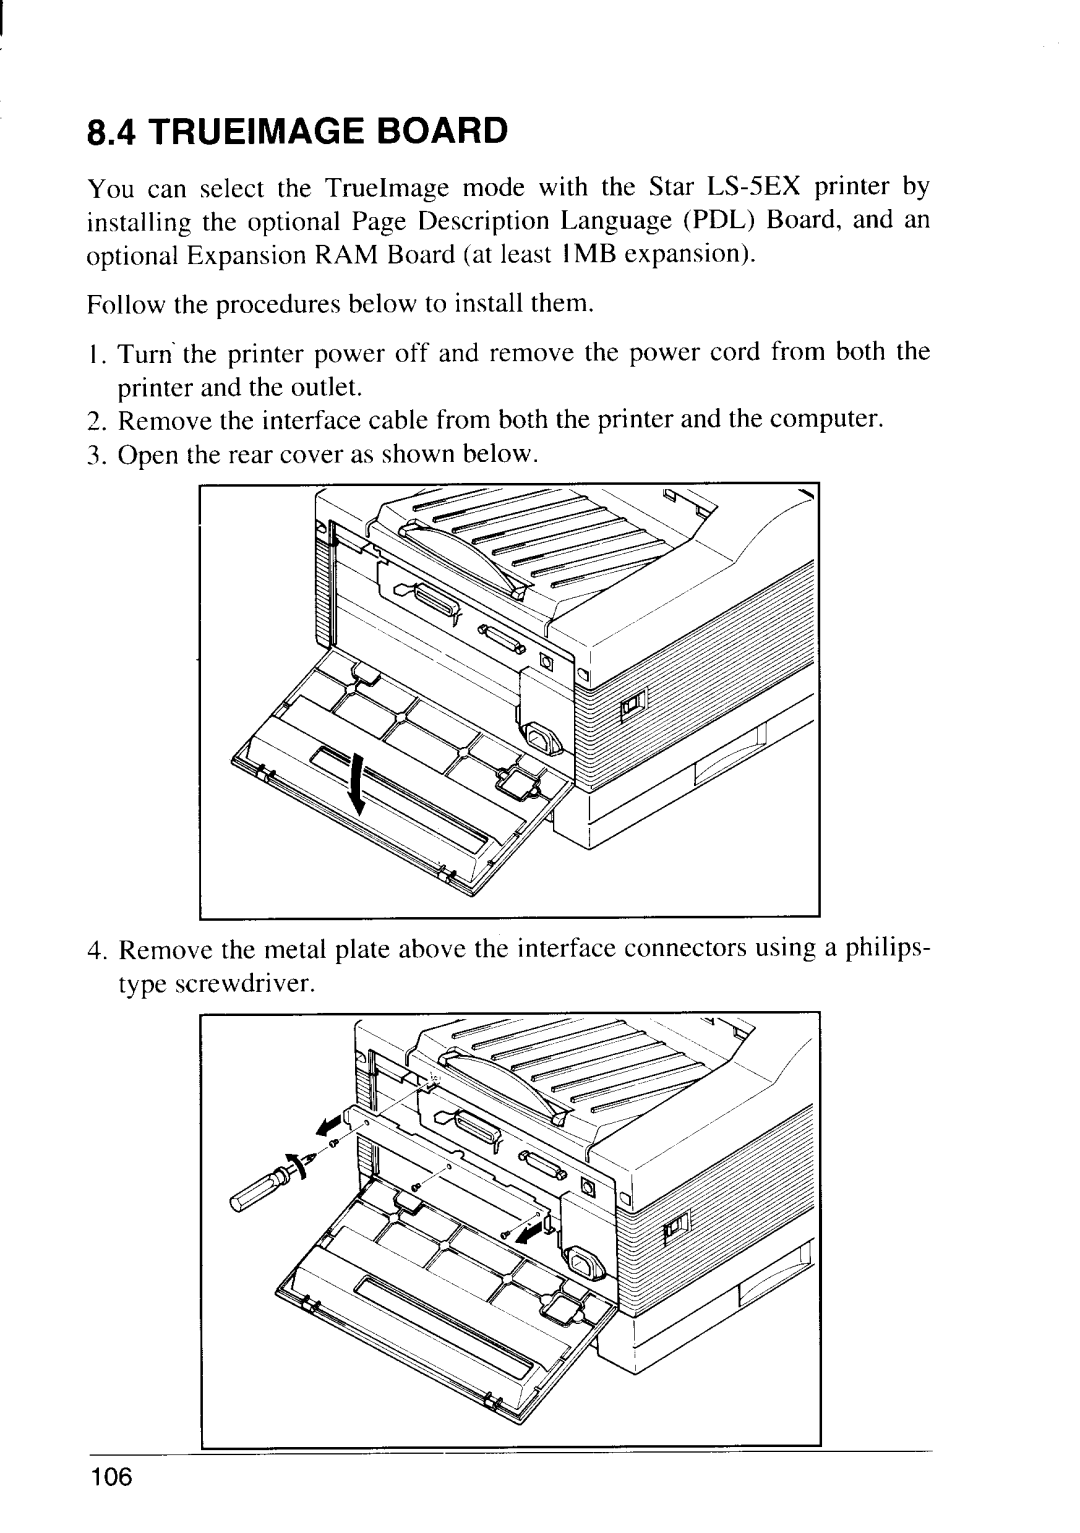 Star Micronics LS-5 EX, LS-5 TT operation manual Trueimage Board 